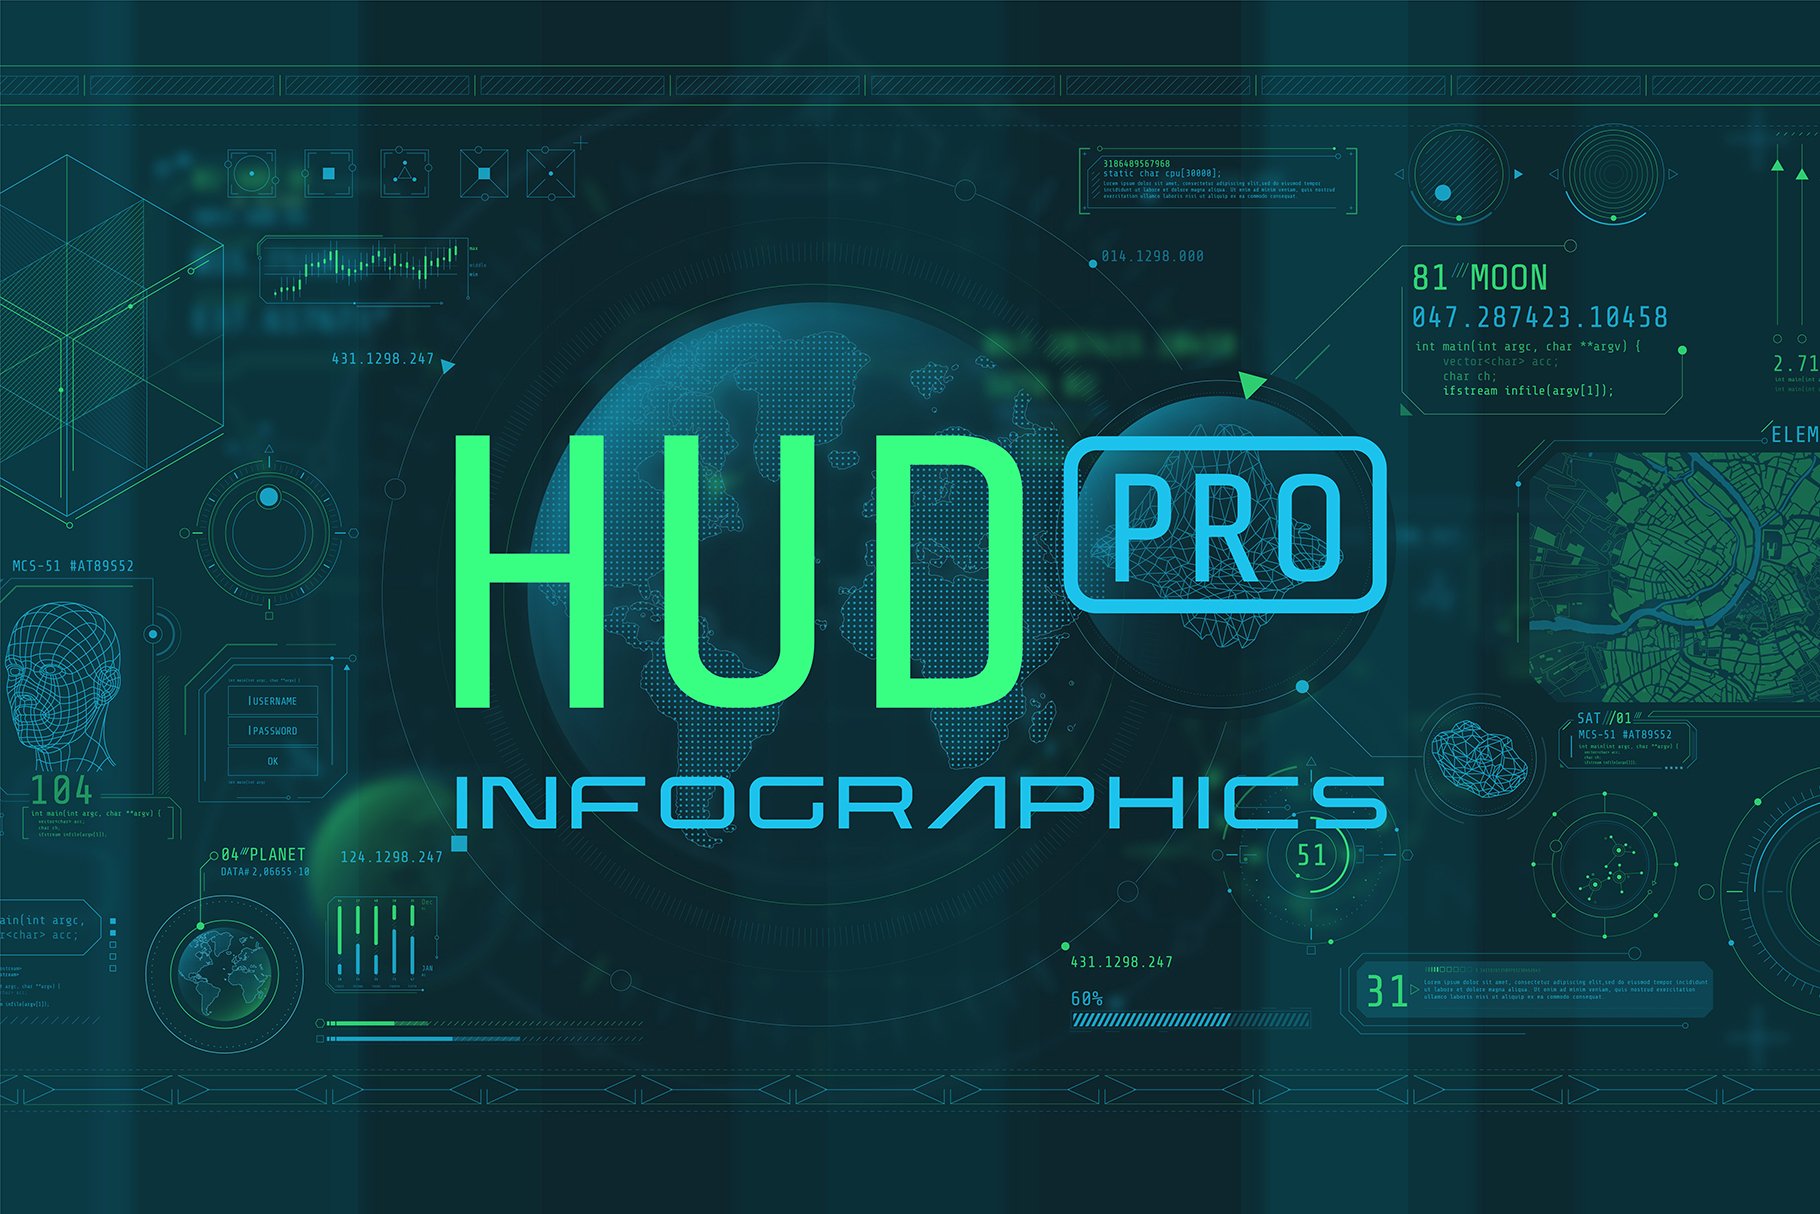 超250款现代未来主义设计 HUD 电影、电脑游戏或 IT通信、现代技术、安全、数据库大数据 信息图表元素 HUD Pro Infographic Elements 设计素材 第1张